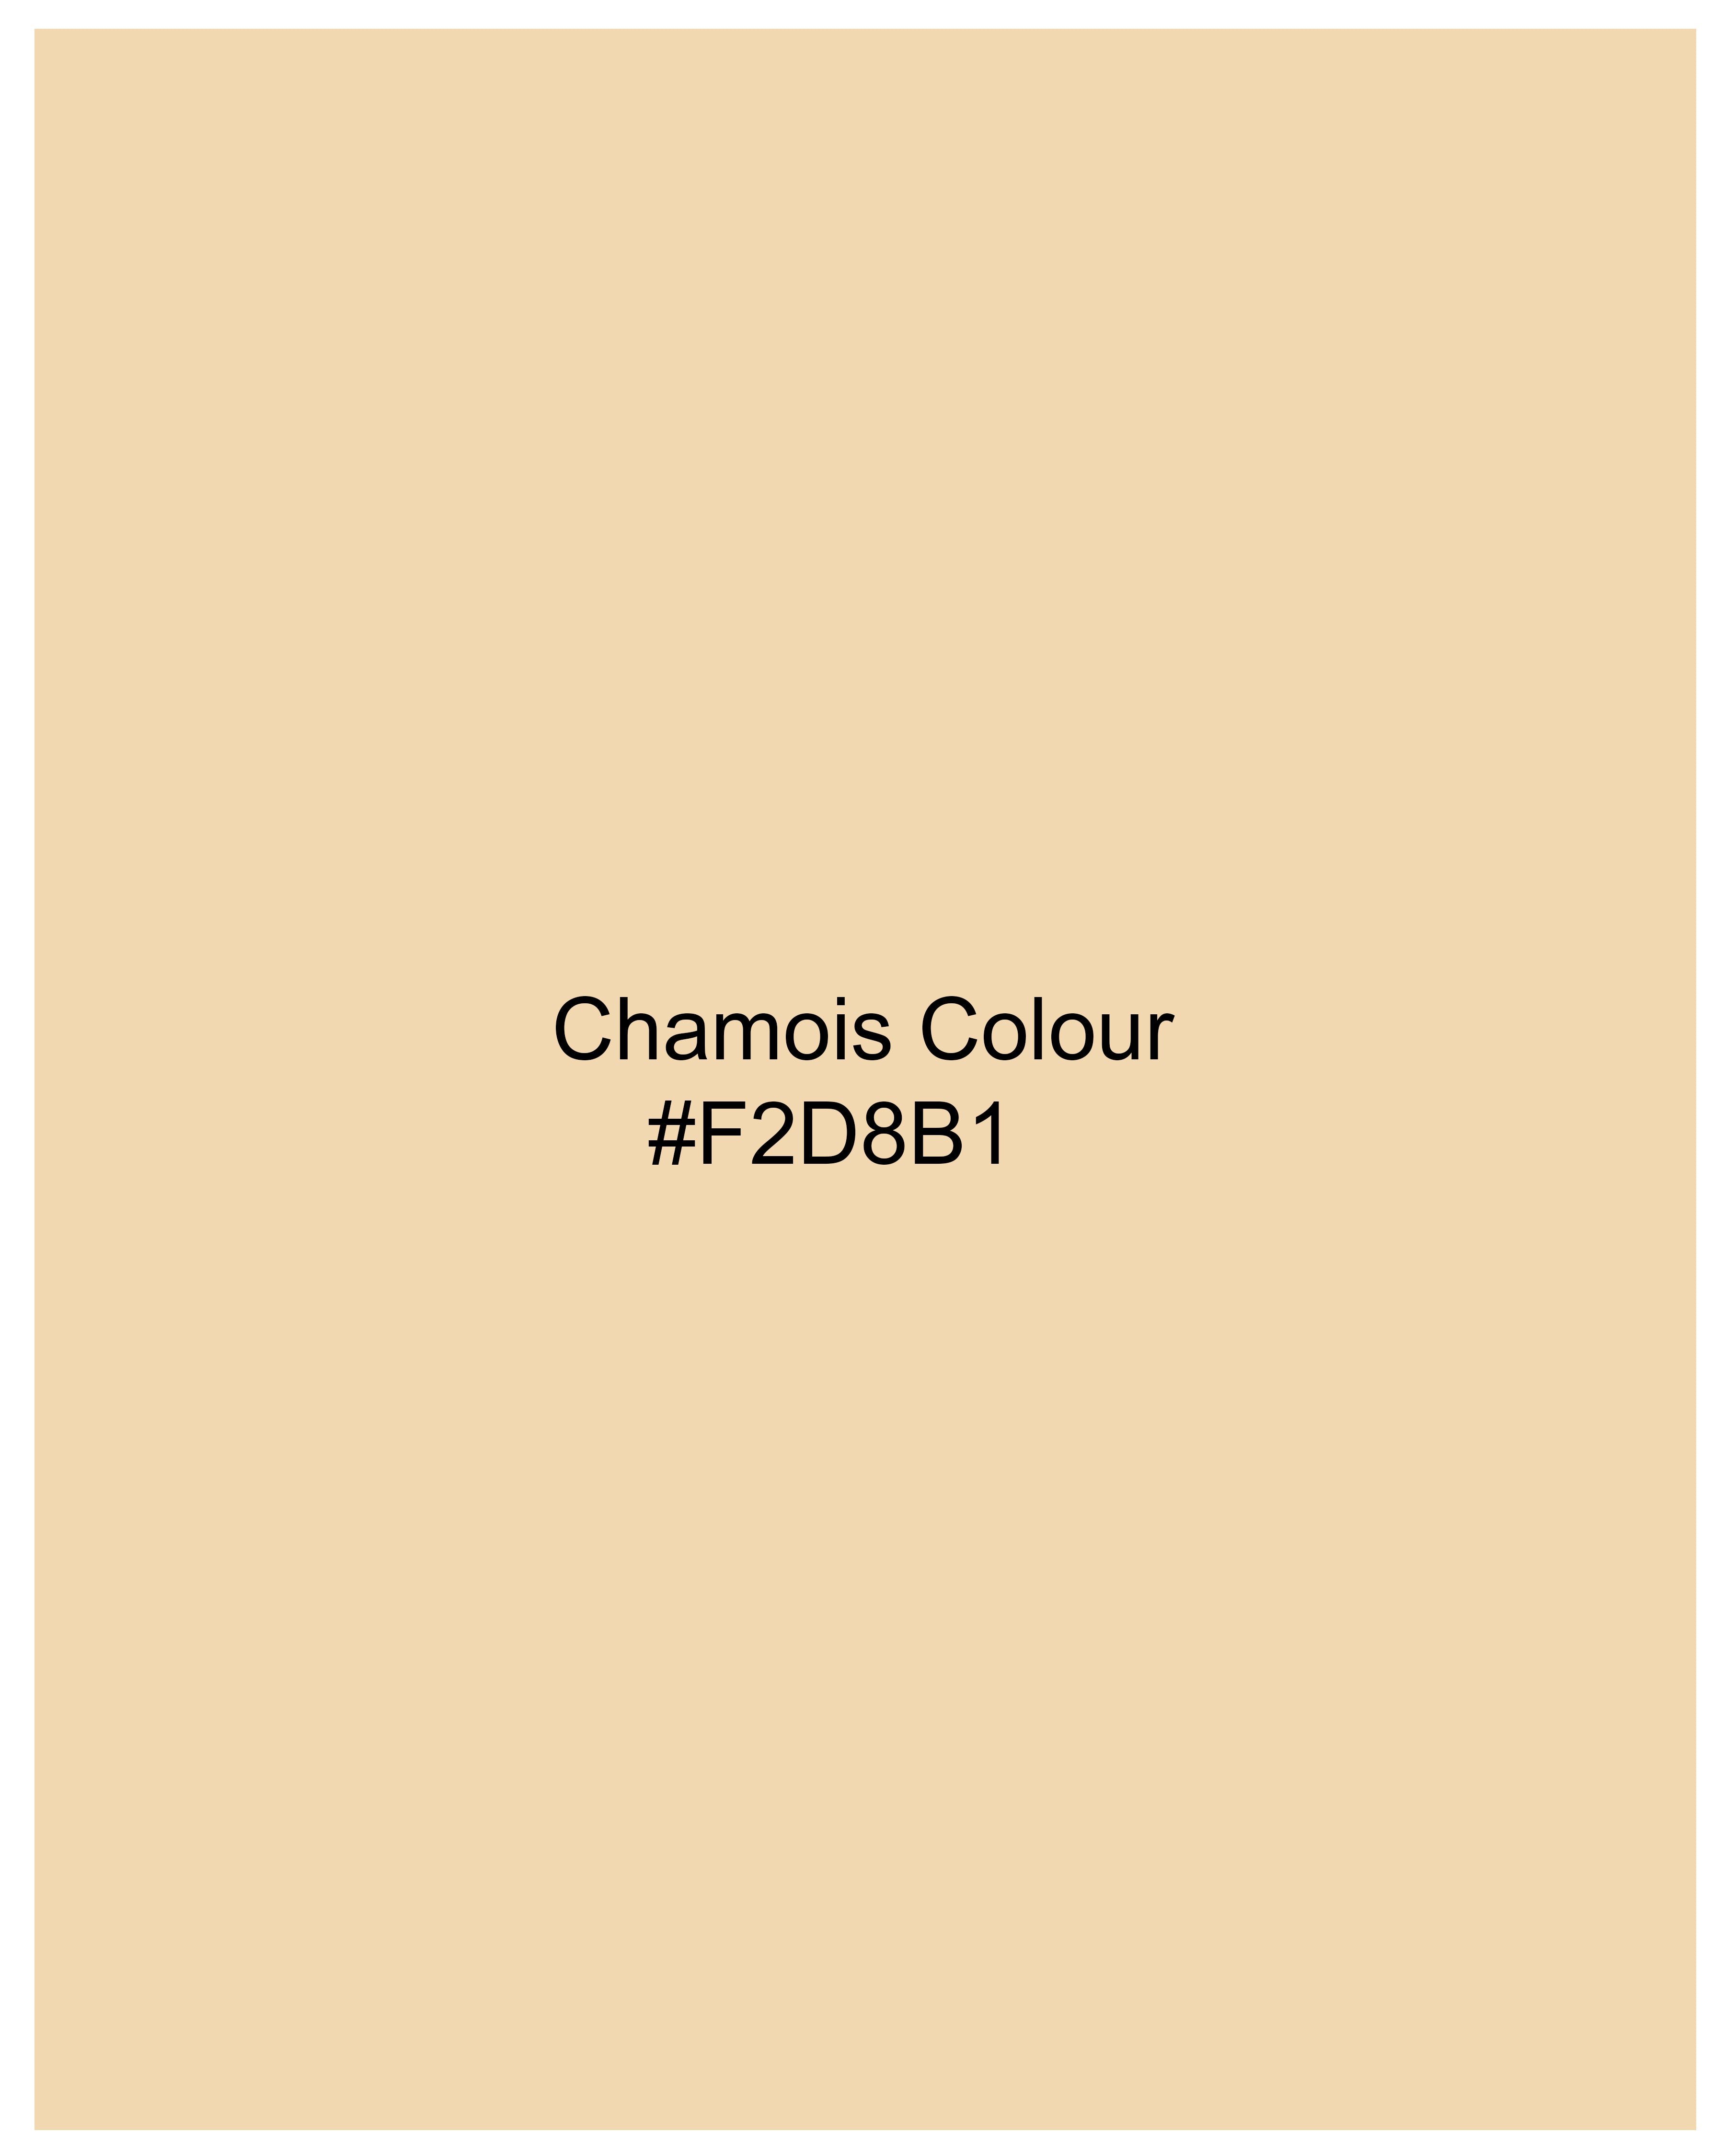  Chamois yellow Super Soft Premium Cotton Shirt 8857-BLK-38, 8857-BLK-H-38,  8857-BLK-39,  8857-BLK-H-39,  8857-BLK-40,  8857-BLK-H-40,  8857-BLK-42,  8857-BLK-H-42,  8857-BLK-44,  8857-BLK-H-44,  8857-BLK-46,  8857-BLK-H-46,  8857-BLK-48,  8857-BLK-H-48,  8857-BLK-50,  8857-BLK-H-50,  8857-BLK-52,  8857-BLK-H-52